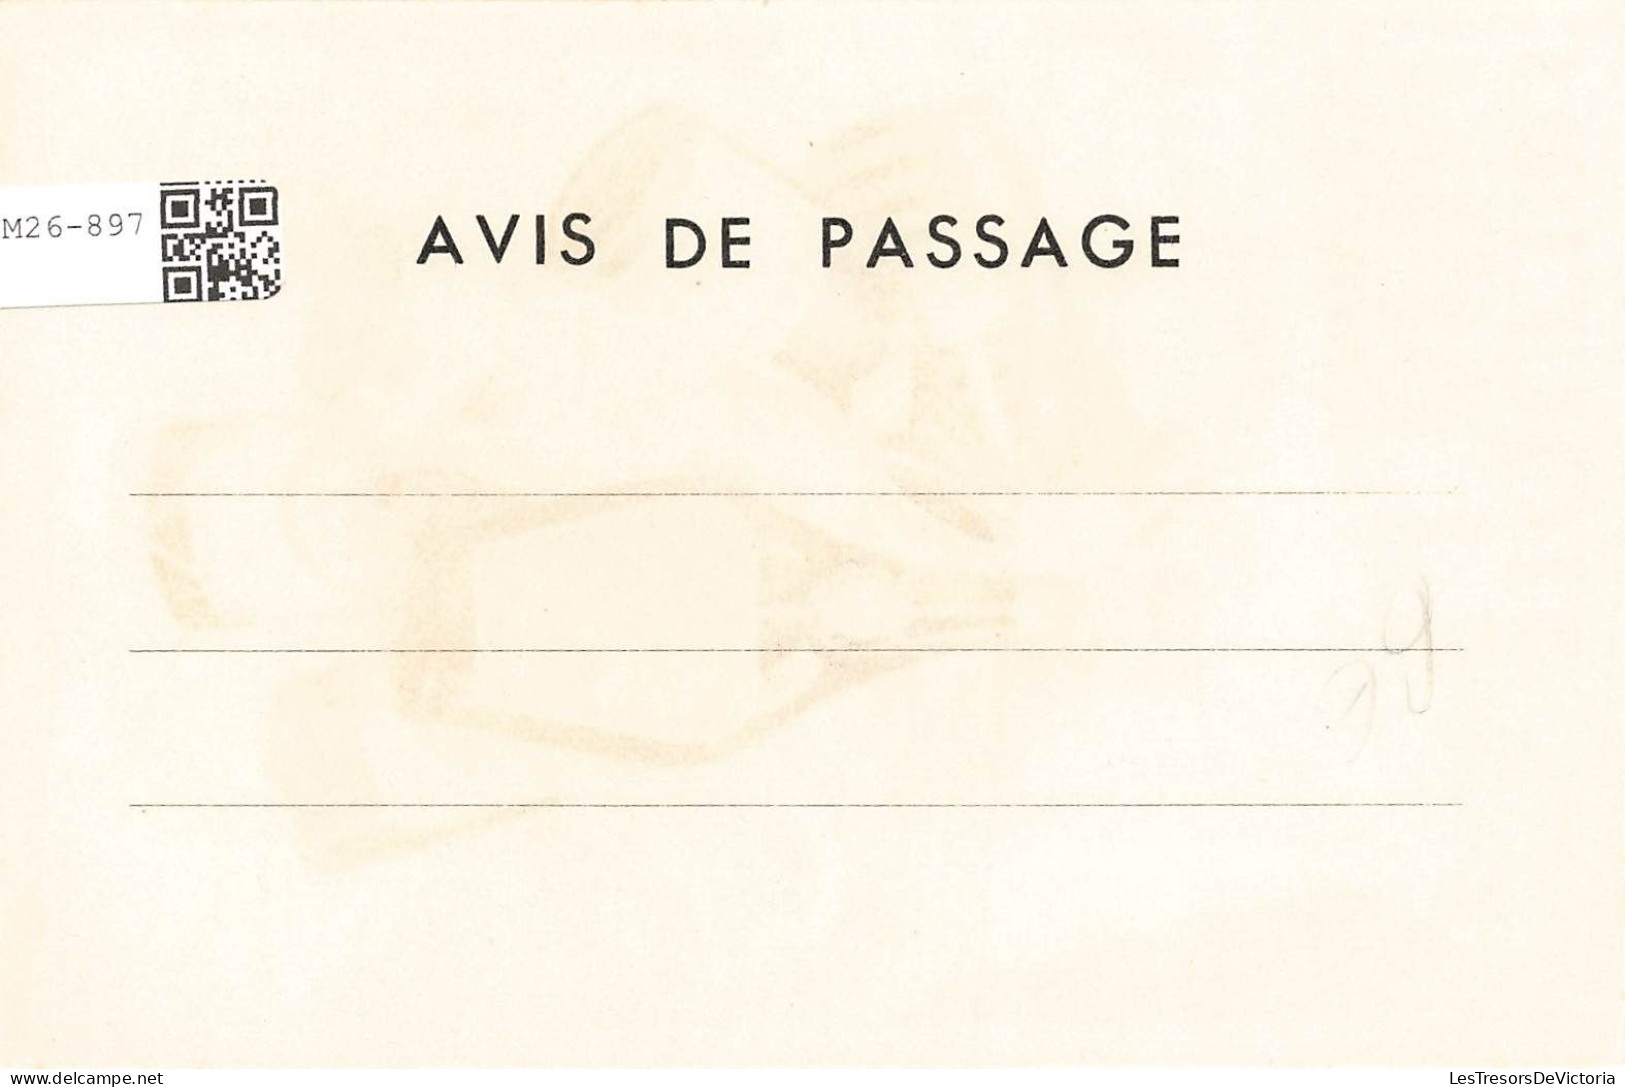 PUBLICITE - Liqueurs Lebert Amboise - Colorisé - Carte Postale Ancienne - Advertising